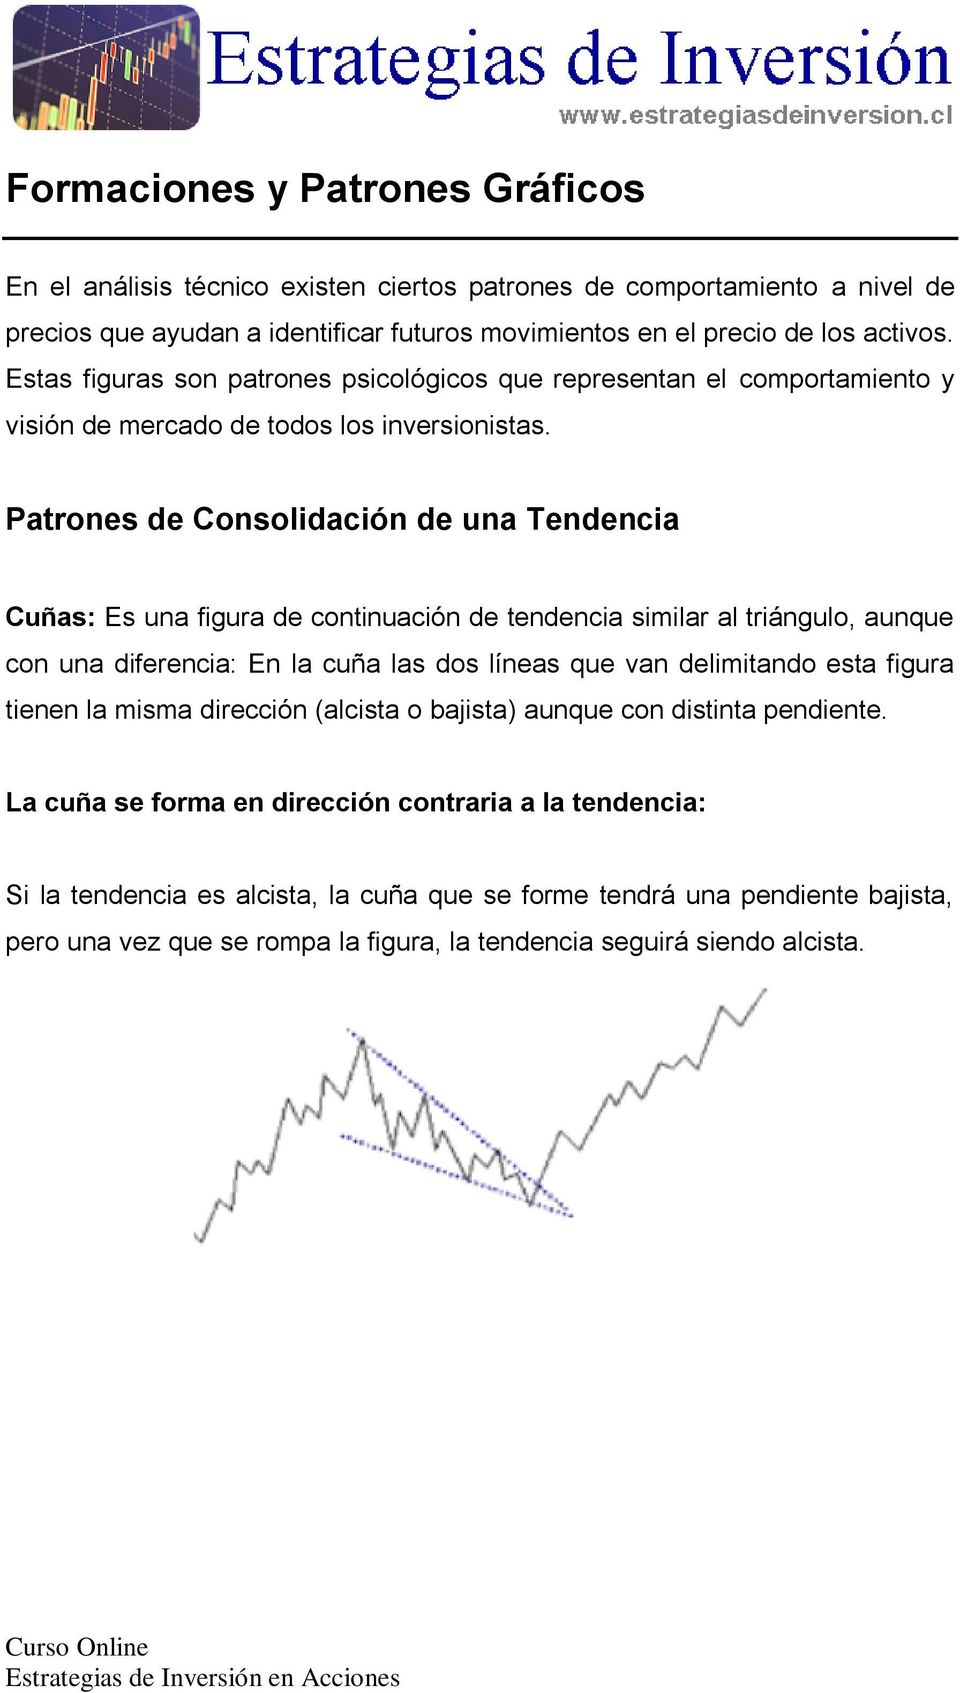 Patrones de Consolidación de una Tendencia Cuñas: Es una figura de continuación de tendencia similar al triángulo, aunque con una diferencia: En la cuña las dos líneas que van delimitando esta figura